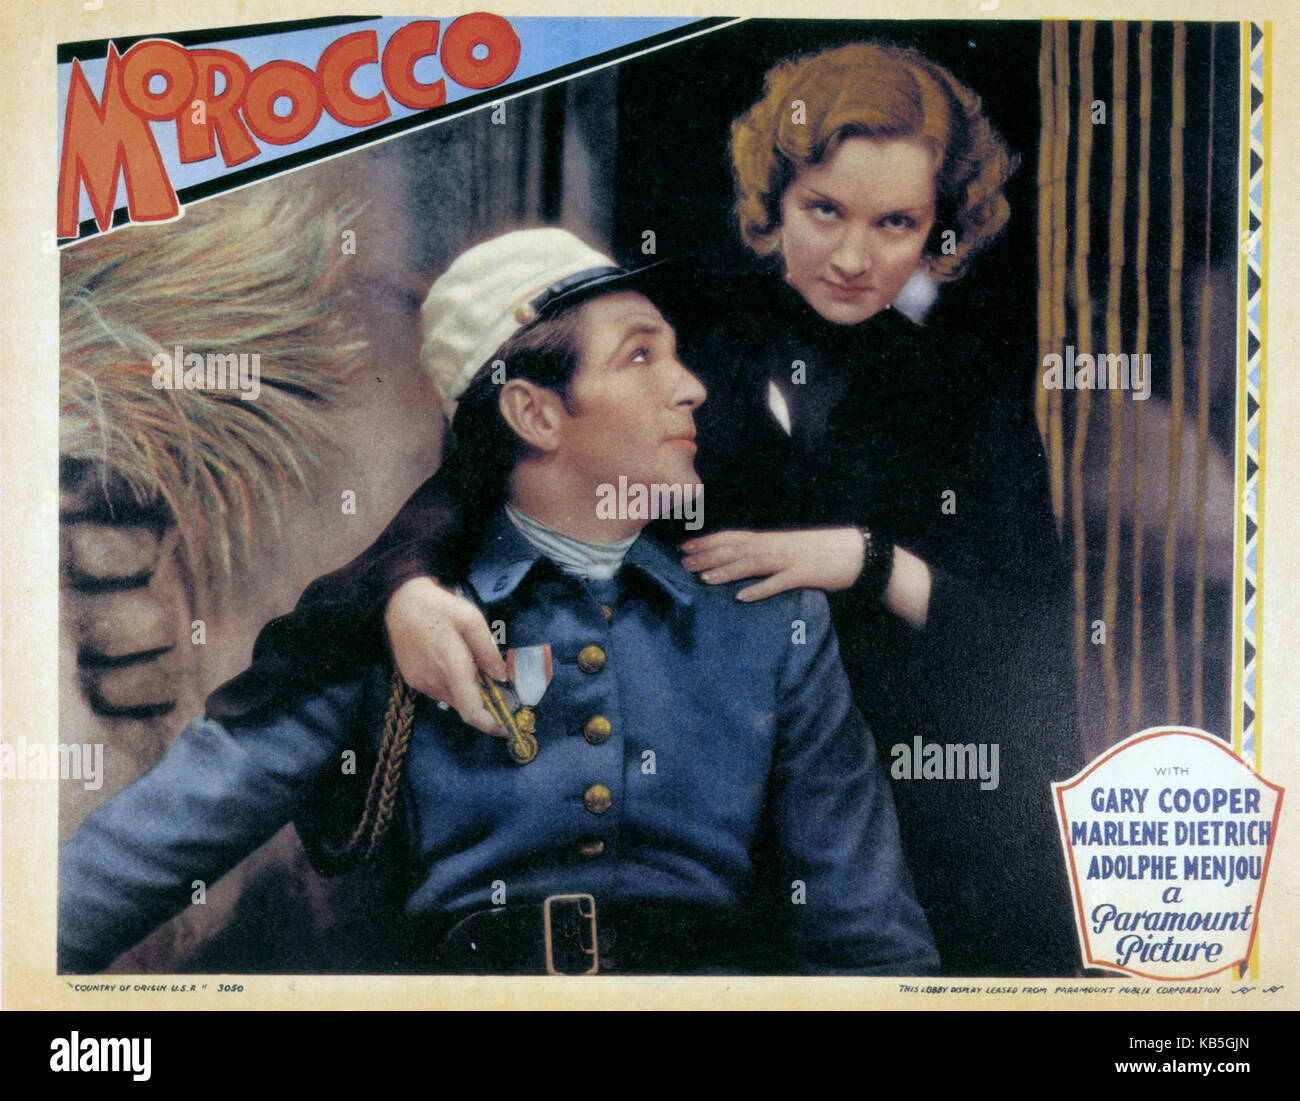 Marocco 1930 Paramount Pictures film con Gary Cooper e Marlene Dietrich Foto Stock